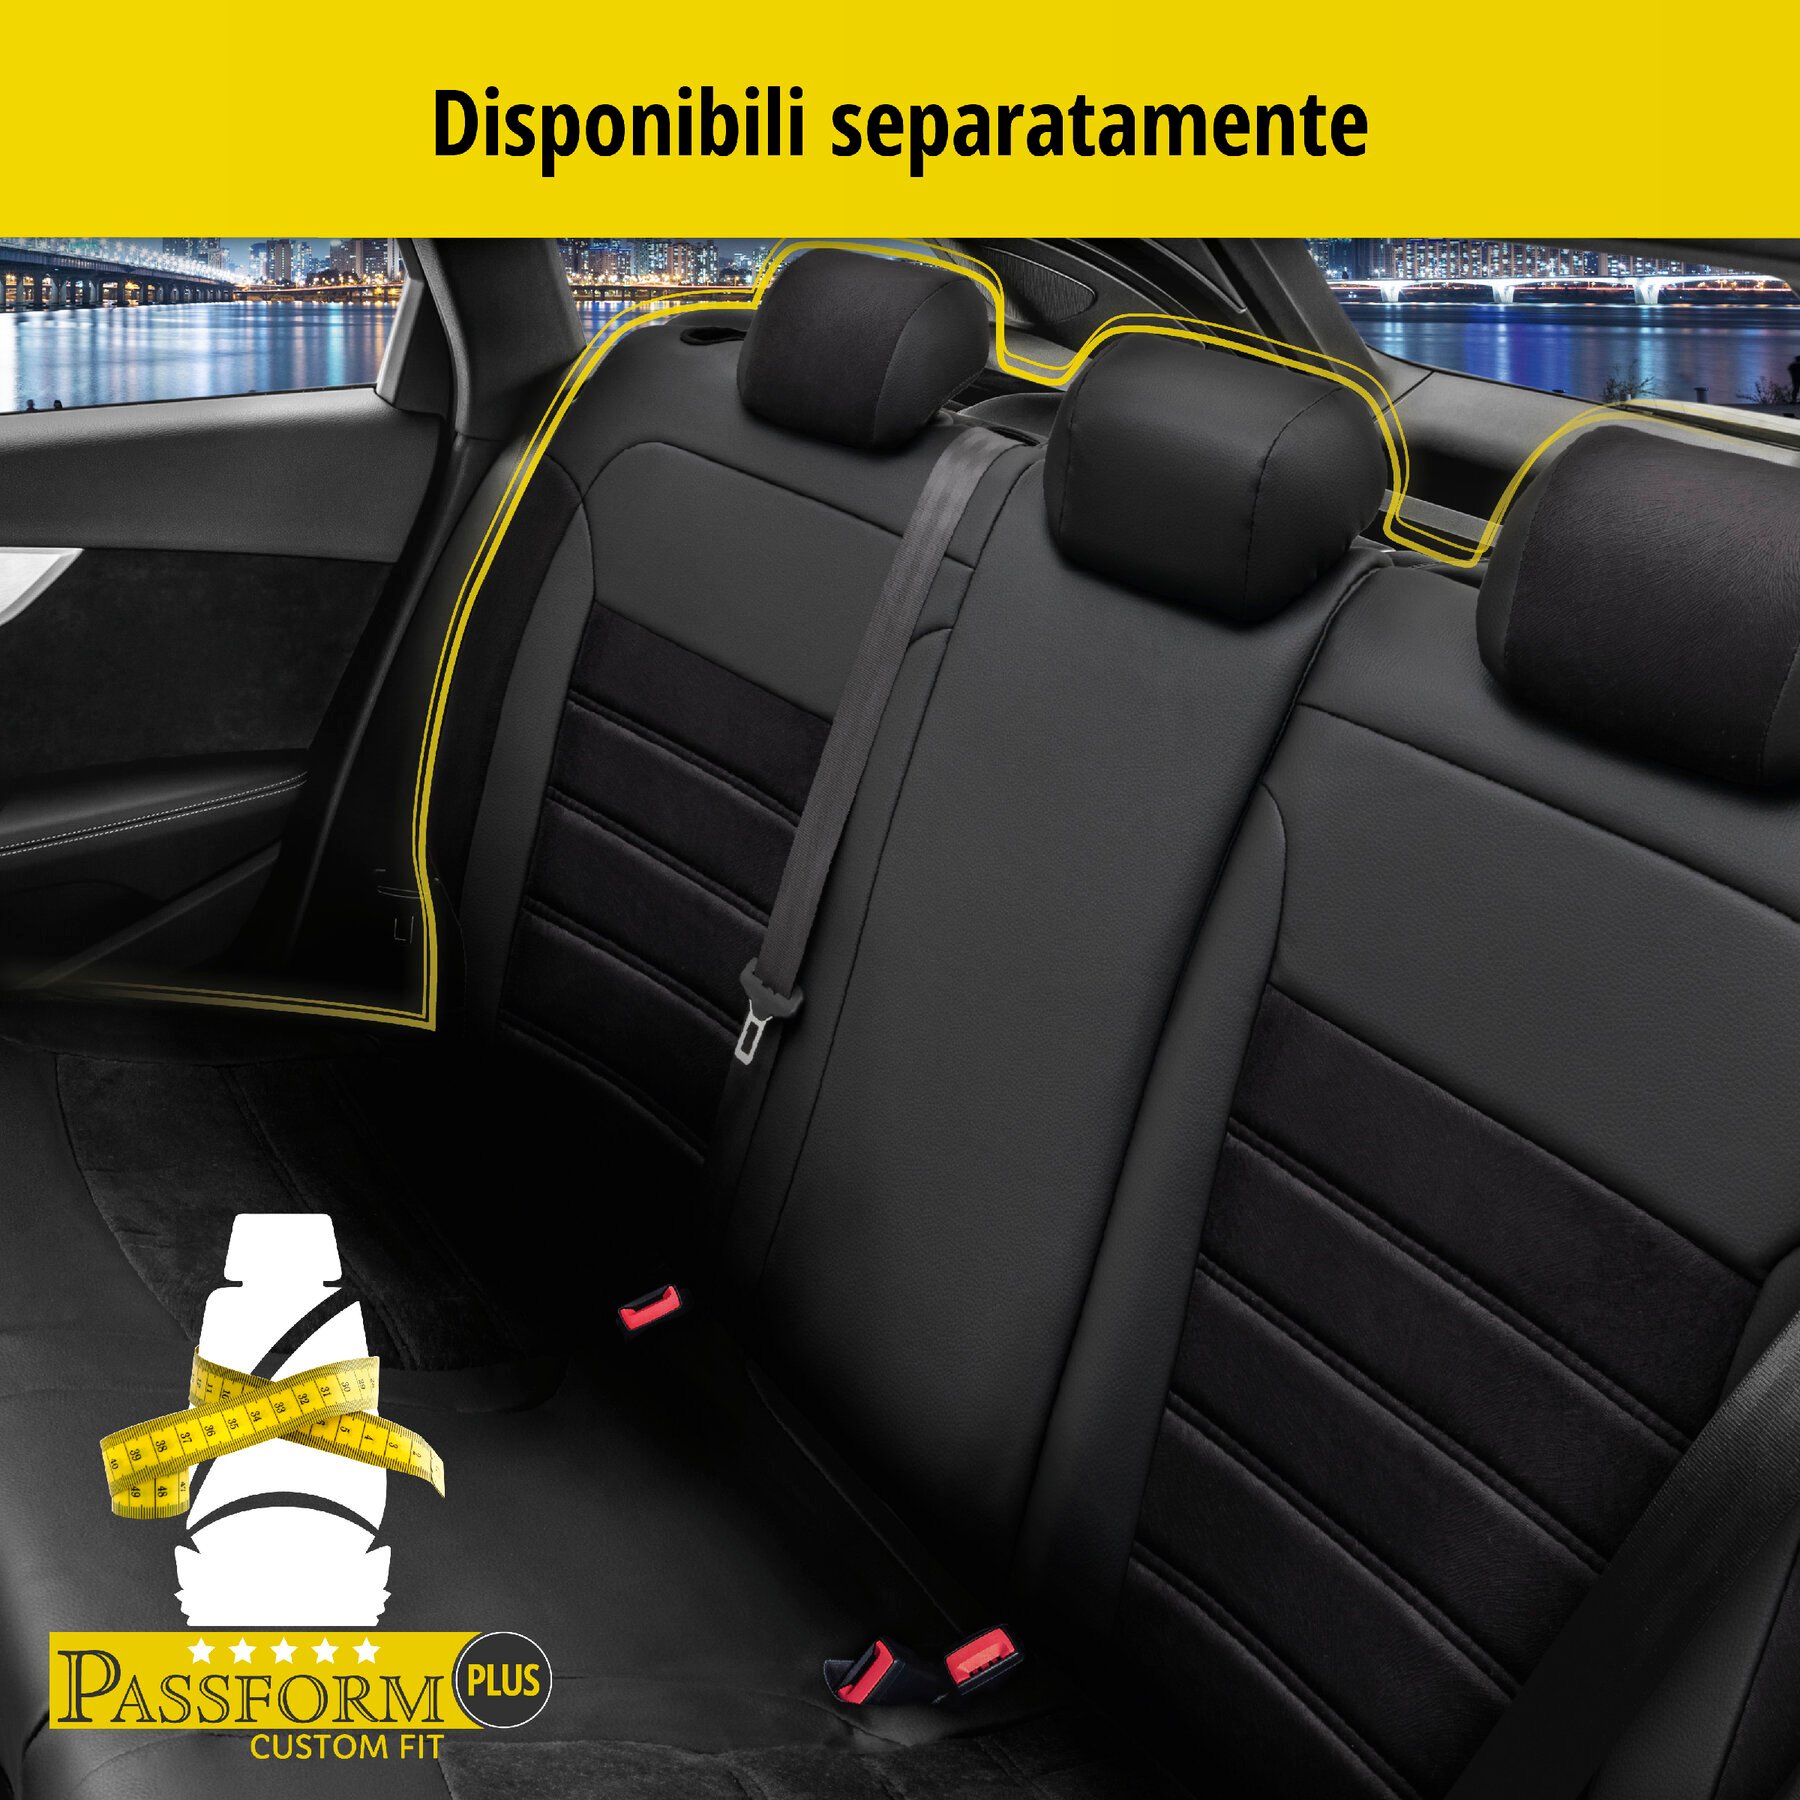 Coprisedili Bari per Opel Corsa 2014-Oggi, 2 coprisedili singoli per sedili normali